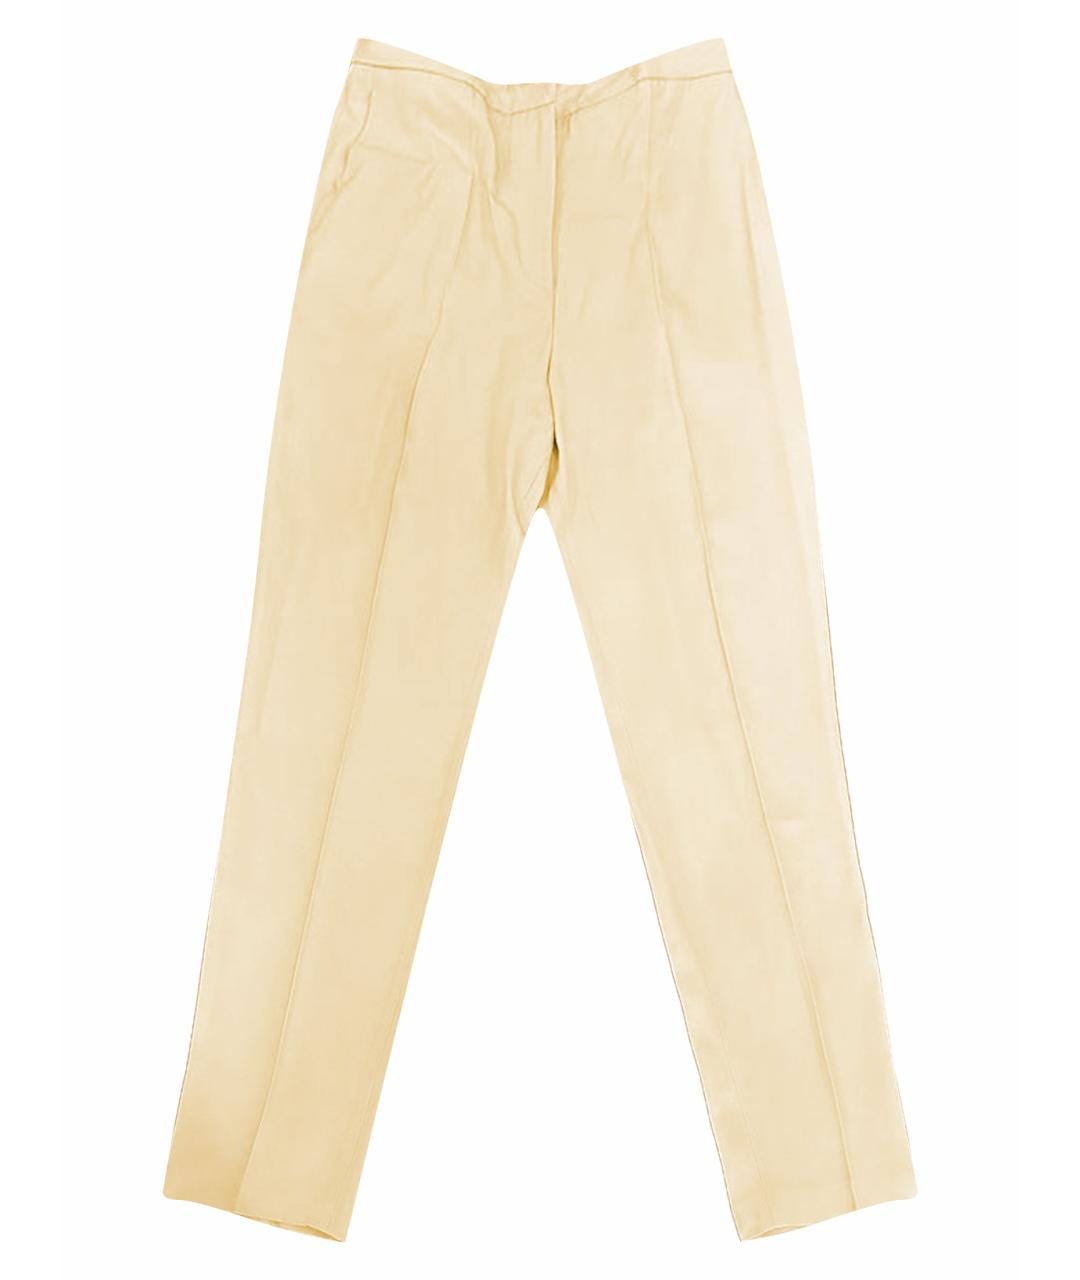 GENNY Бежевые ацетатные брюки узкие, фото 1